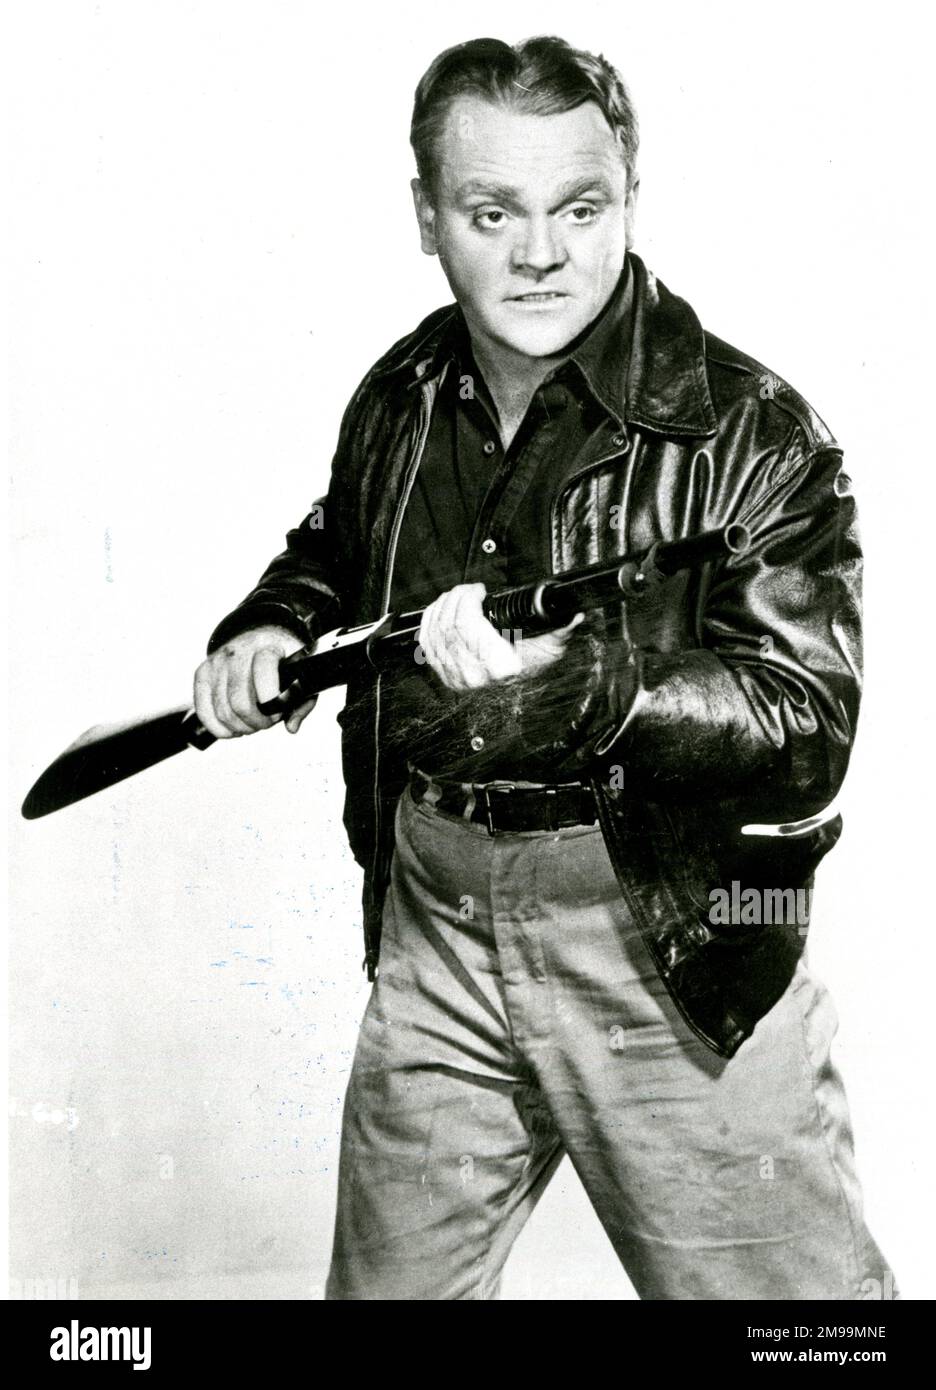 James (Jimmy) Cagney (1899-1986), amerikanischer Schauspieler und Tänzer. Hier gesehen in der Rolle des psychotischen Kriminellen Arthur Jarrett im Film White Heat (1949). Stockfoto